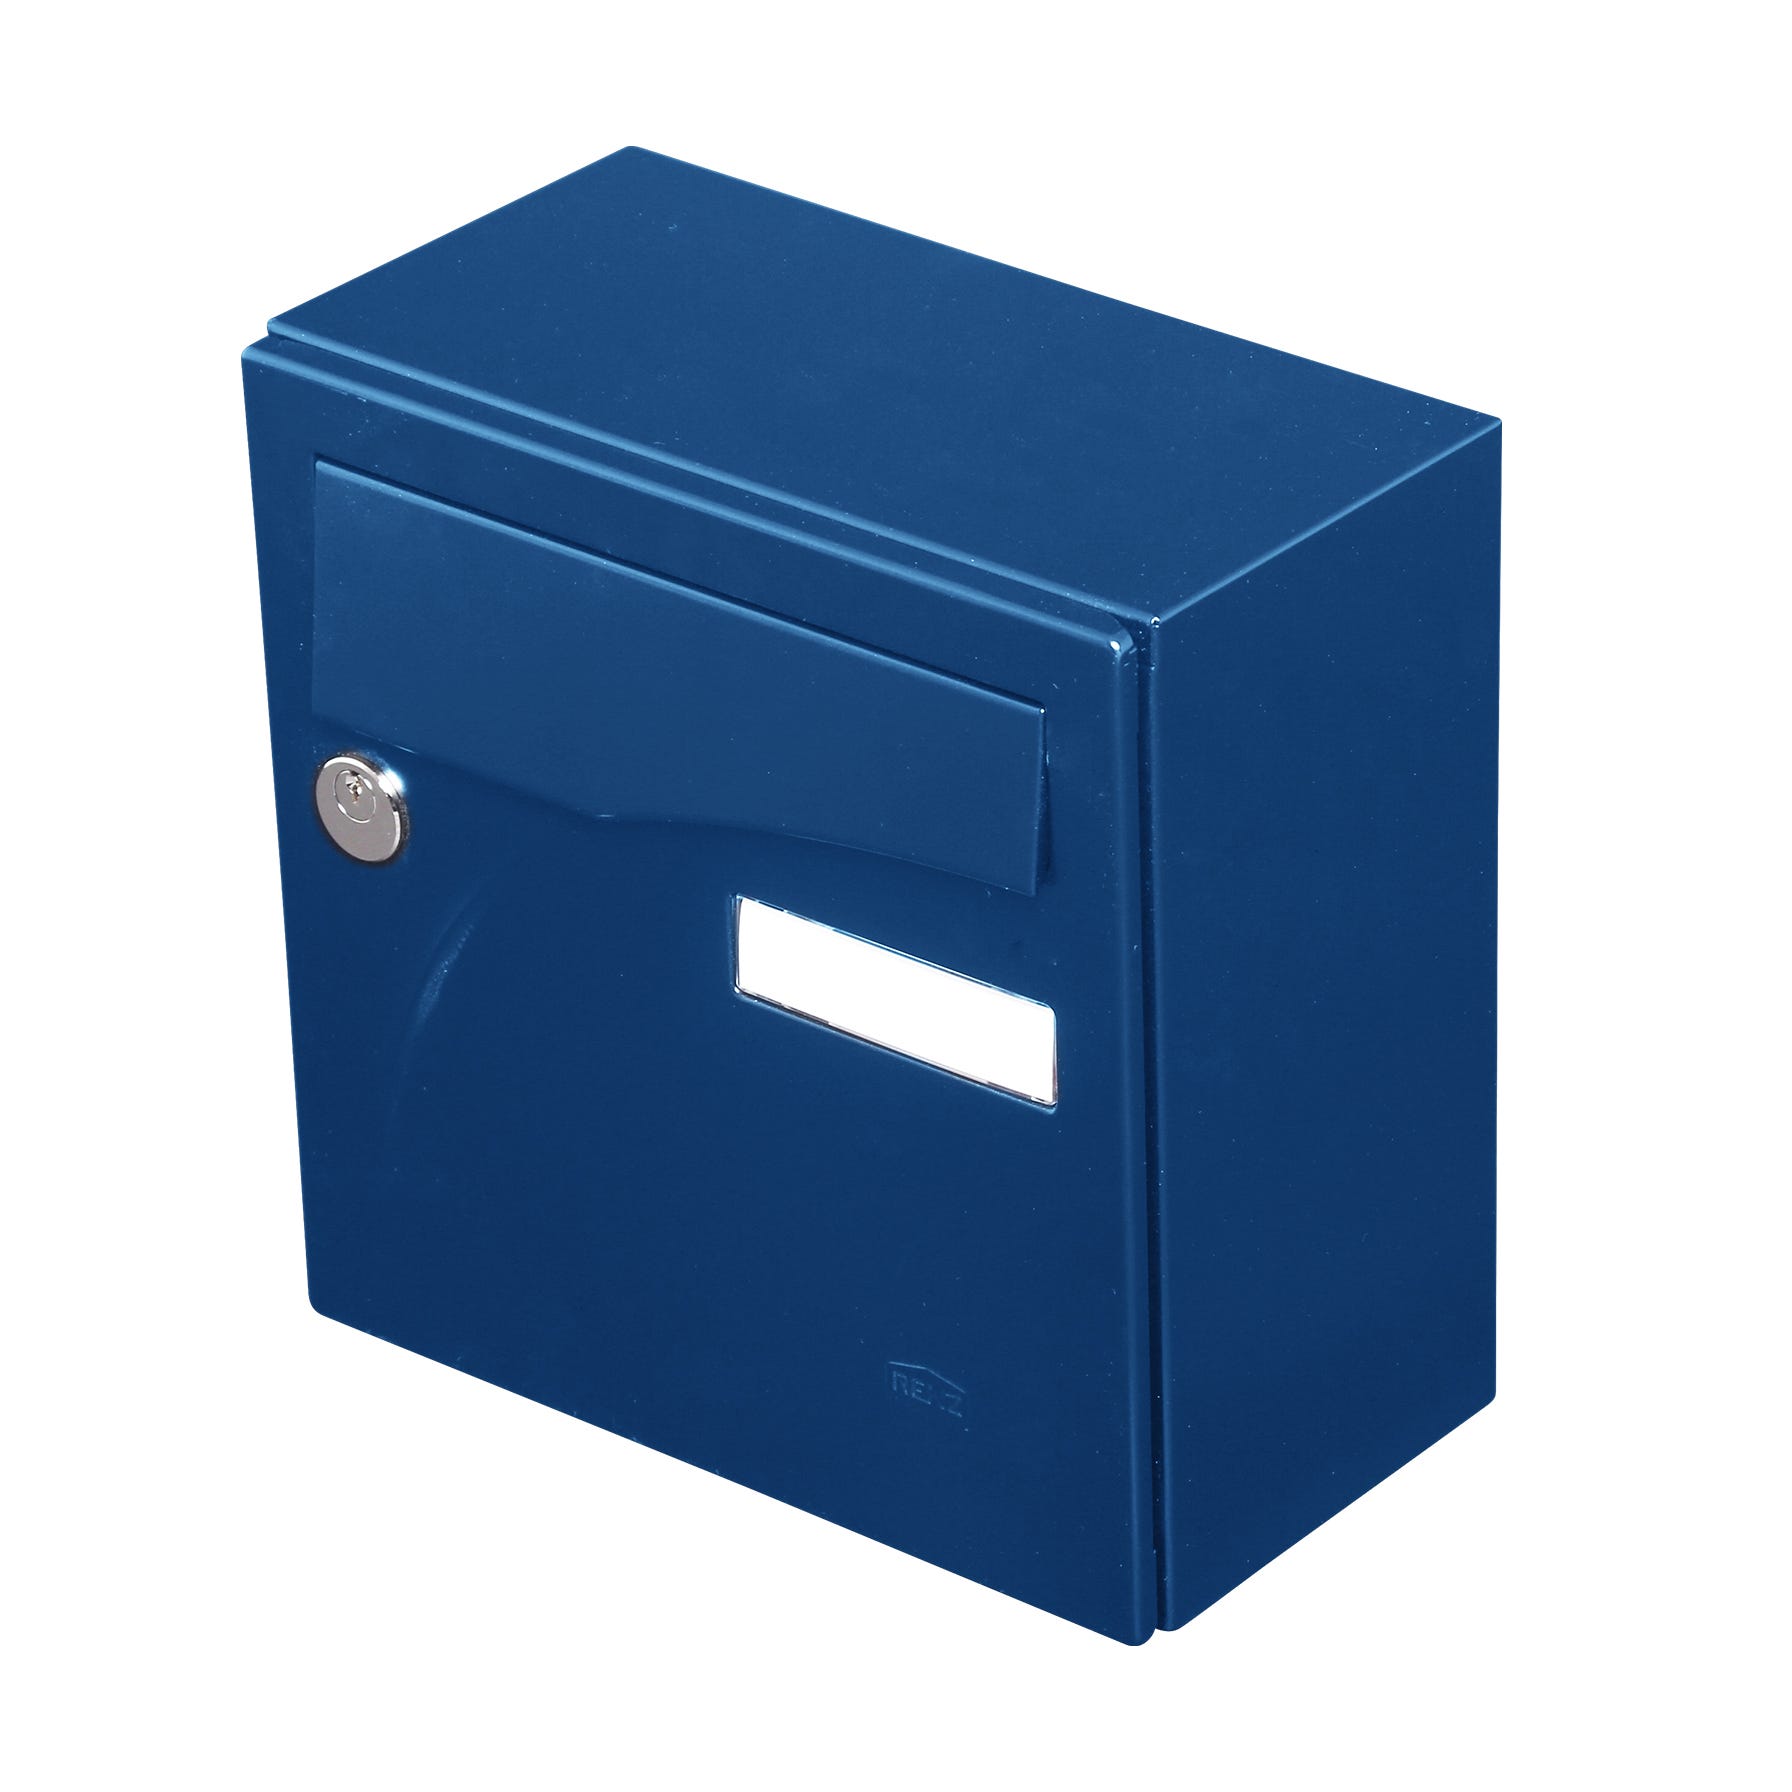 Boite aux lettres Préface compact bleu gentiane RAL 5010 brillant 2